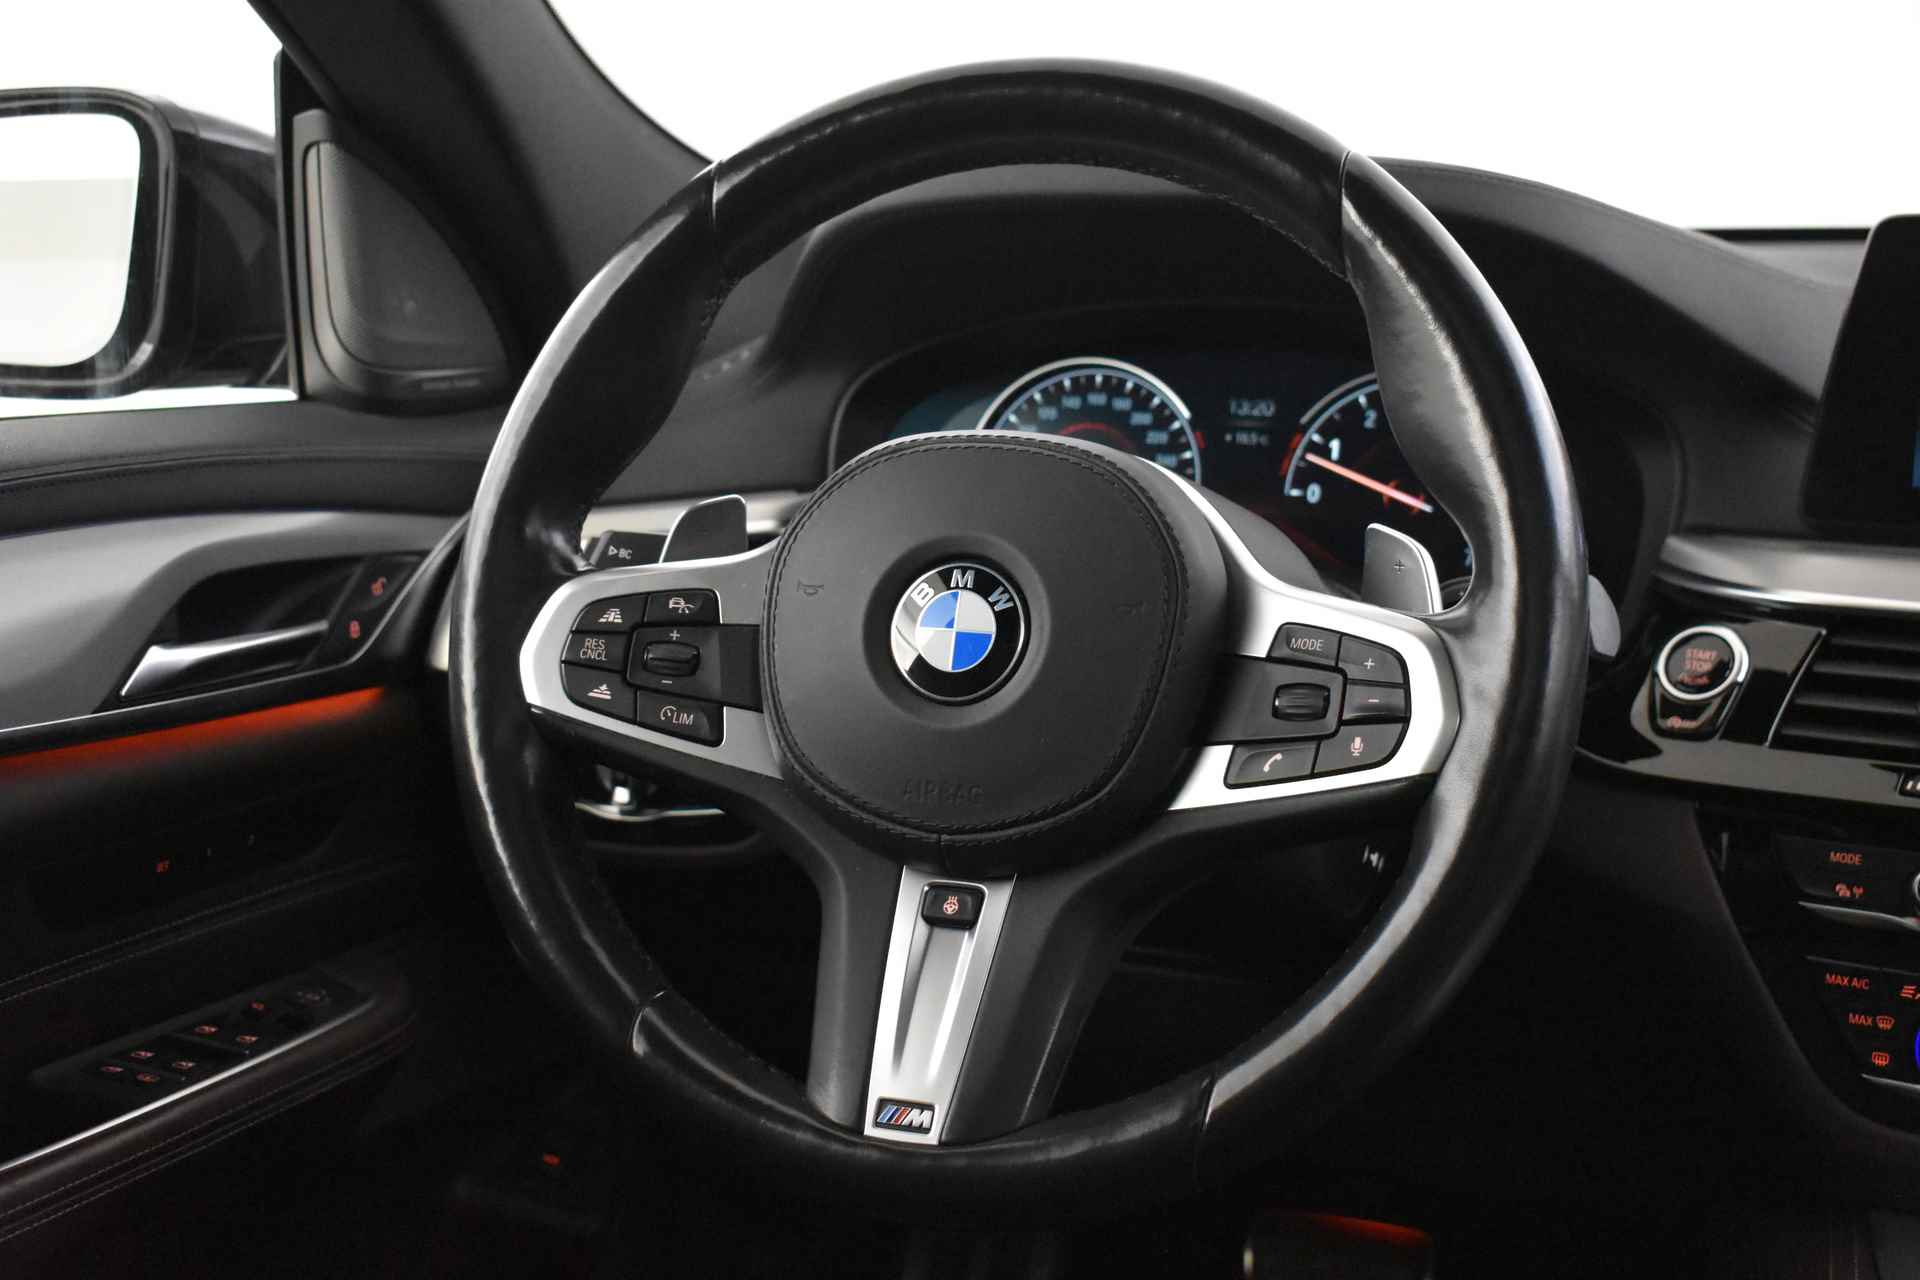 BMW 6 Serie Gran Turismo 640i High Executive M Sport Automaat / Panoramadak / Adaptieve LED / Active Cruise Control / Harman Kardon / Navigatie Professional / Comfort Access - 26/58